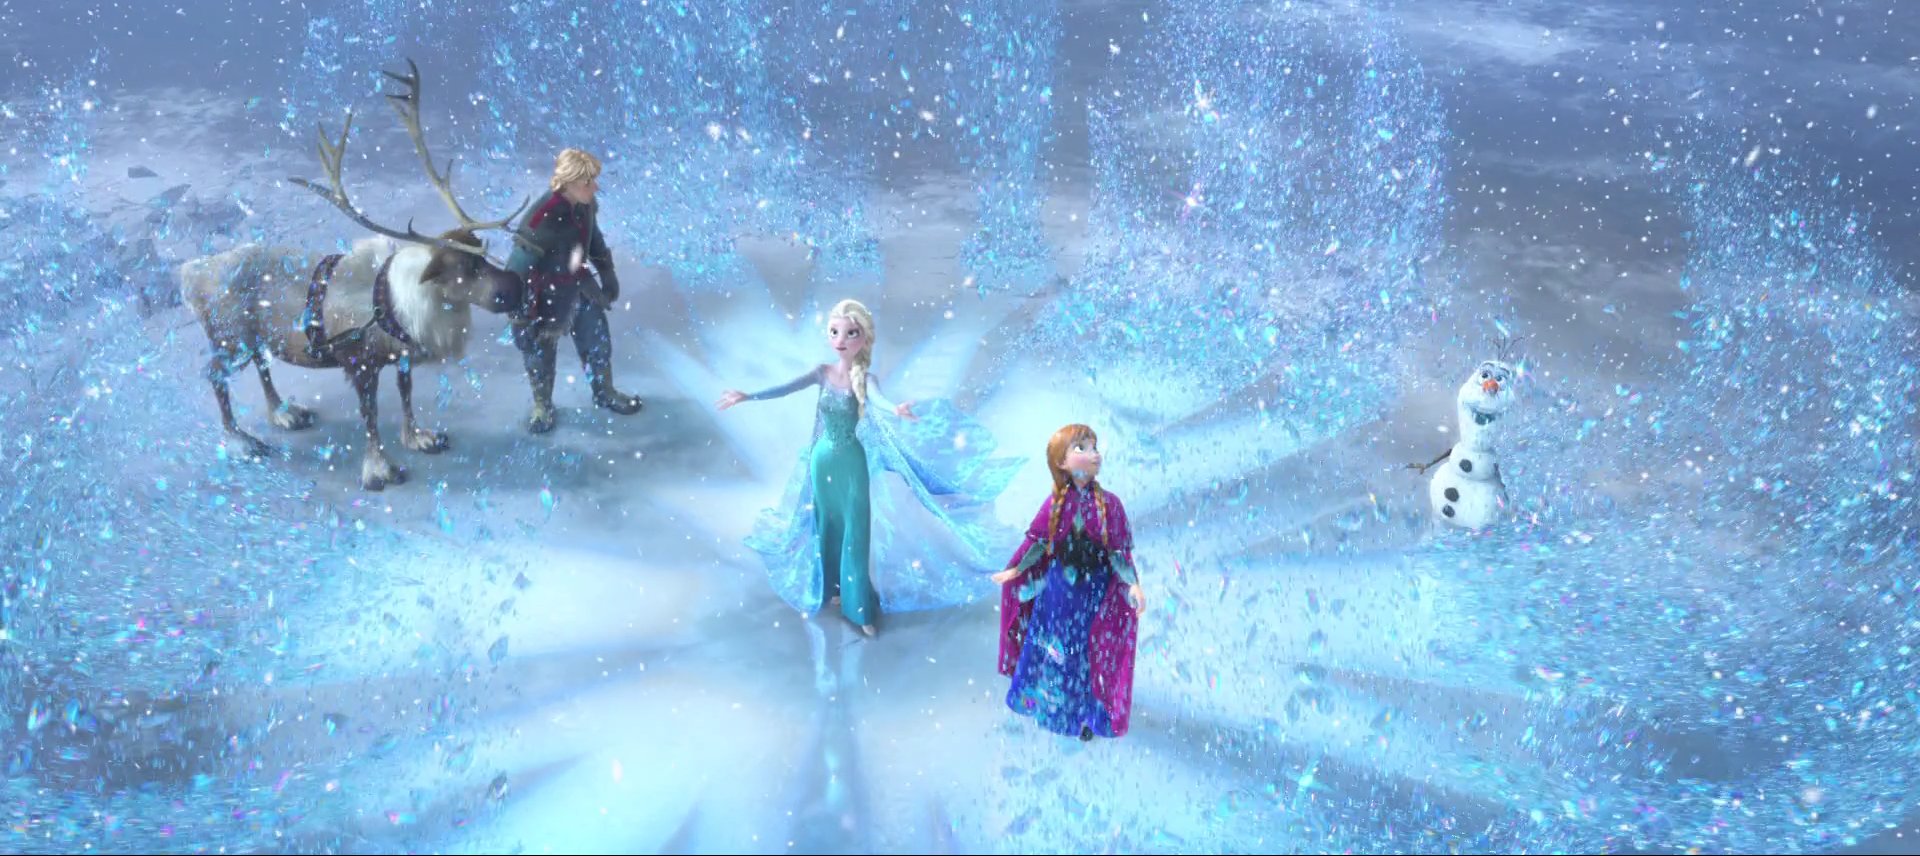 Đừng bỏ lỡ cơ hội chứng kiến hình ảnh nàng công chúa Elsa với sức mạnh bí ẩn và nét đẹp thiên thần giữa thế giới tuyết trắng tuyệt đẹp.